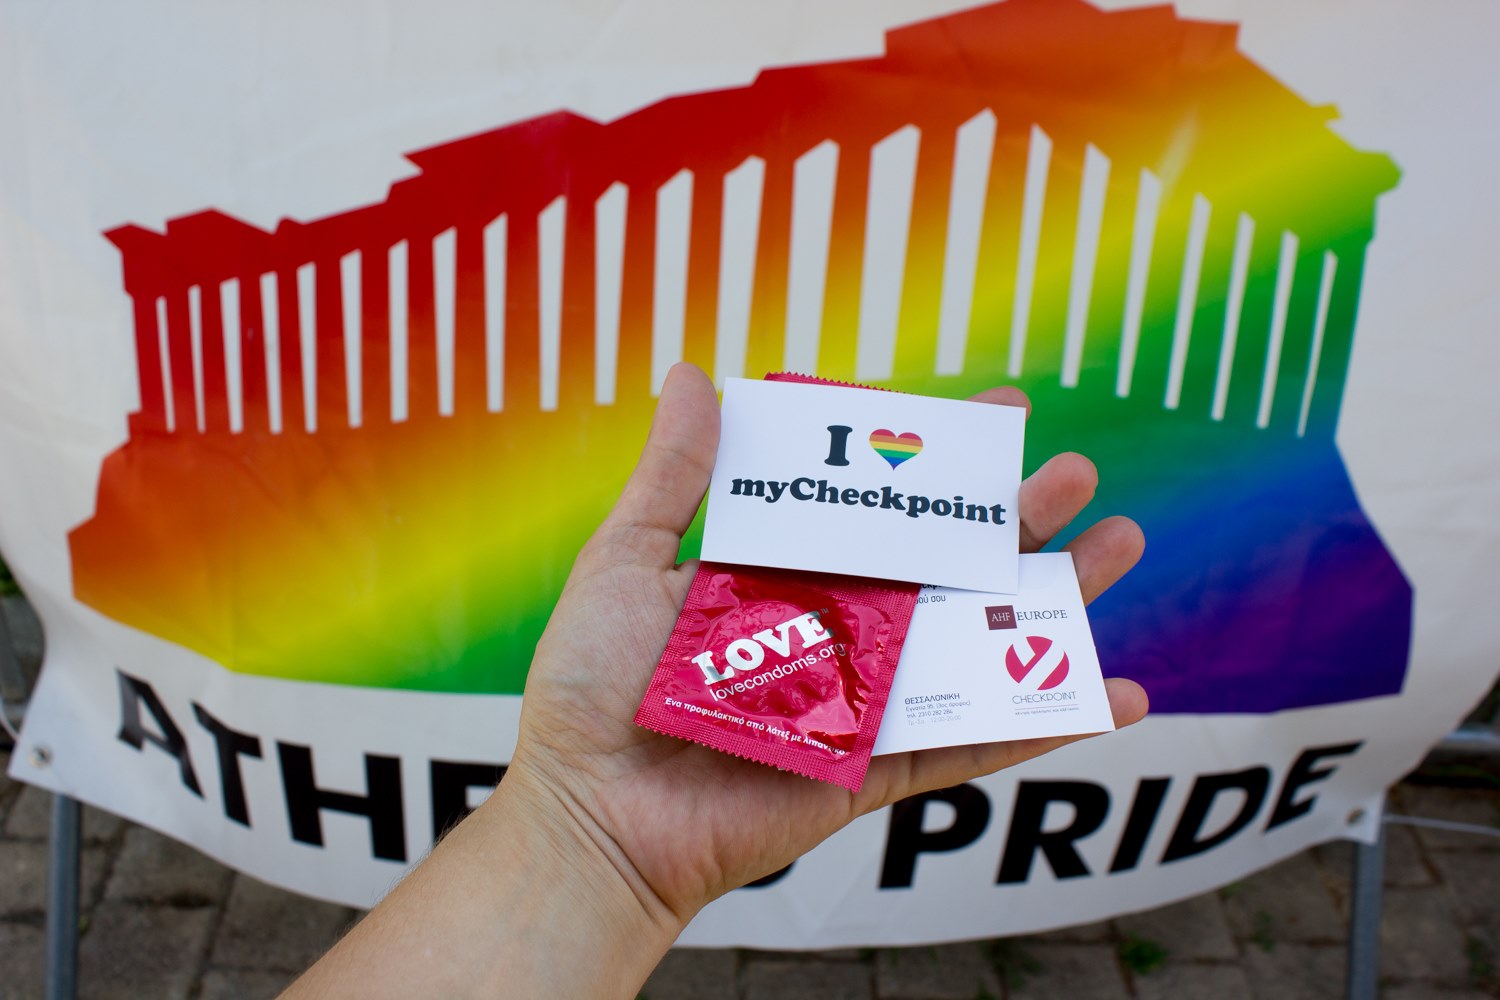 Featured image for “Η Θετική Φωνή σας προσκαλεί στο Athens Pride 2021”